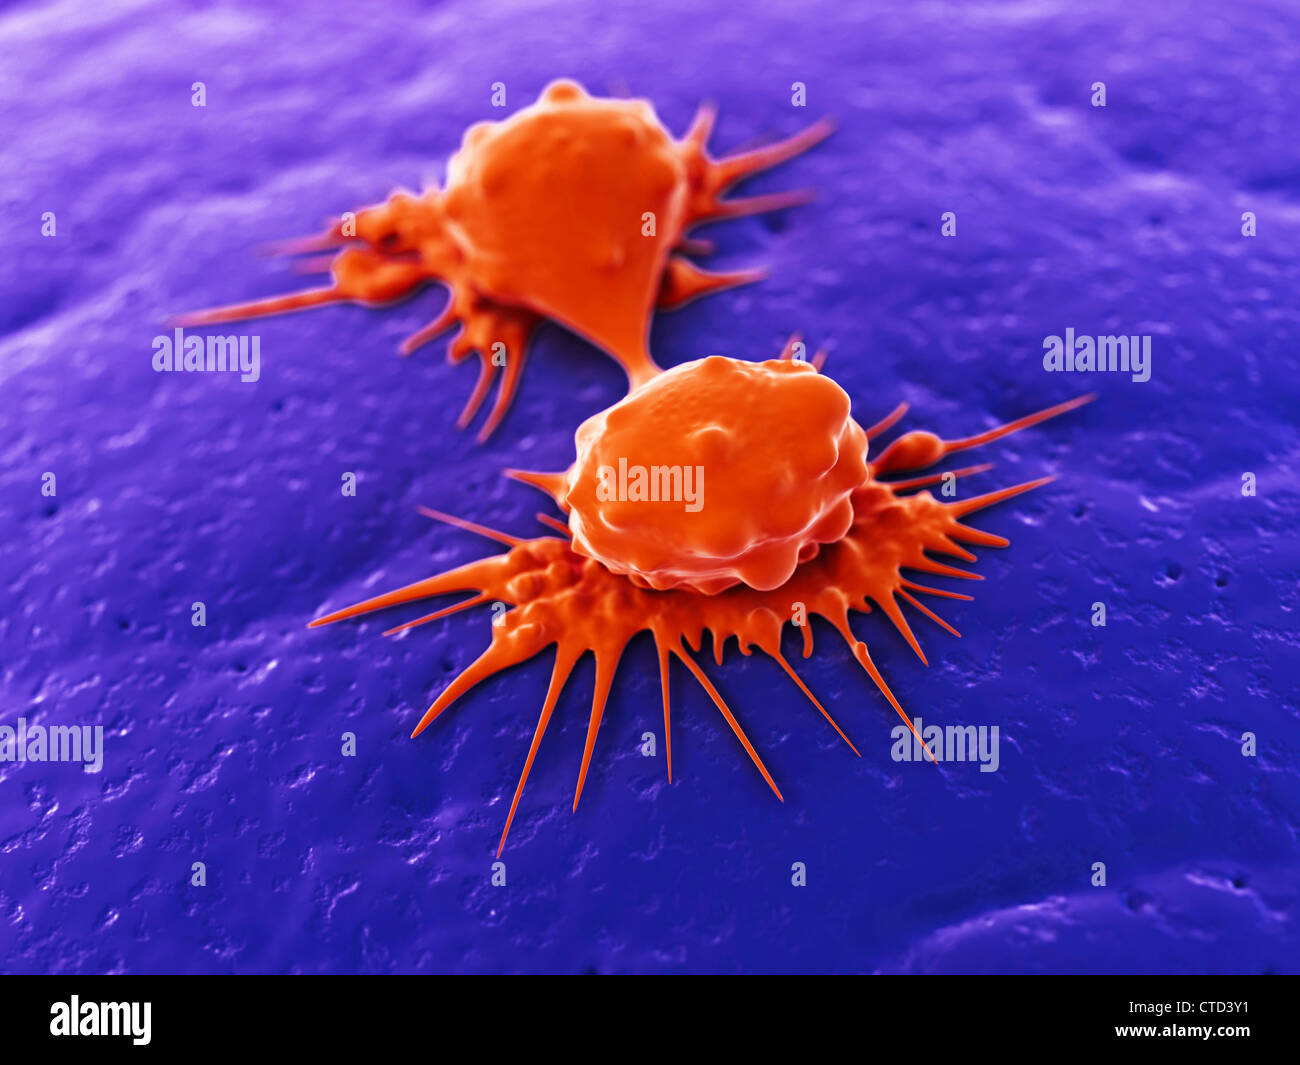 Les cellules cancéreuses divisant artwork Banque D'Images